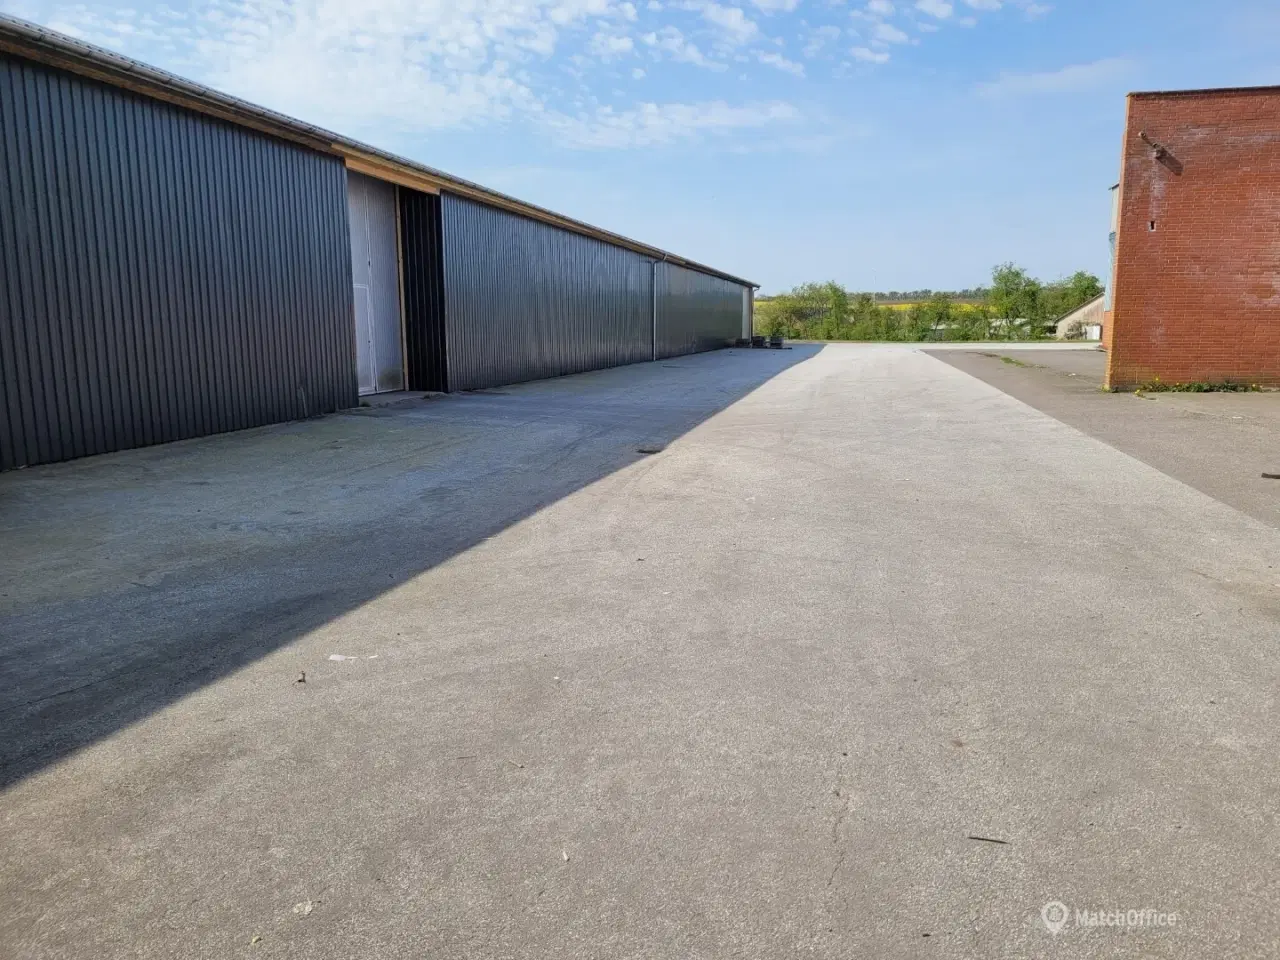 Billede 2 - 3.191 m2 lager eller produktionslokaler i Randers